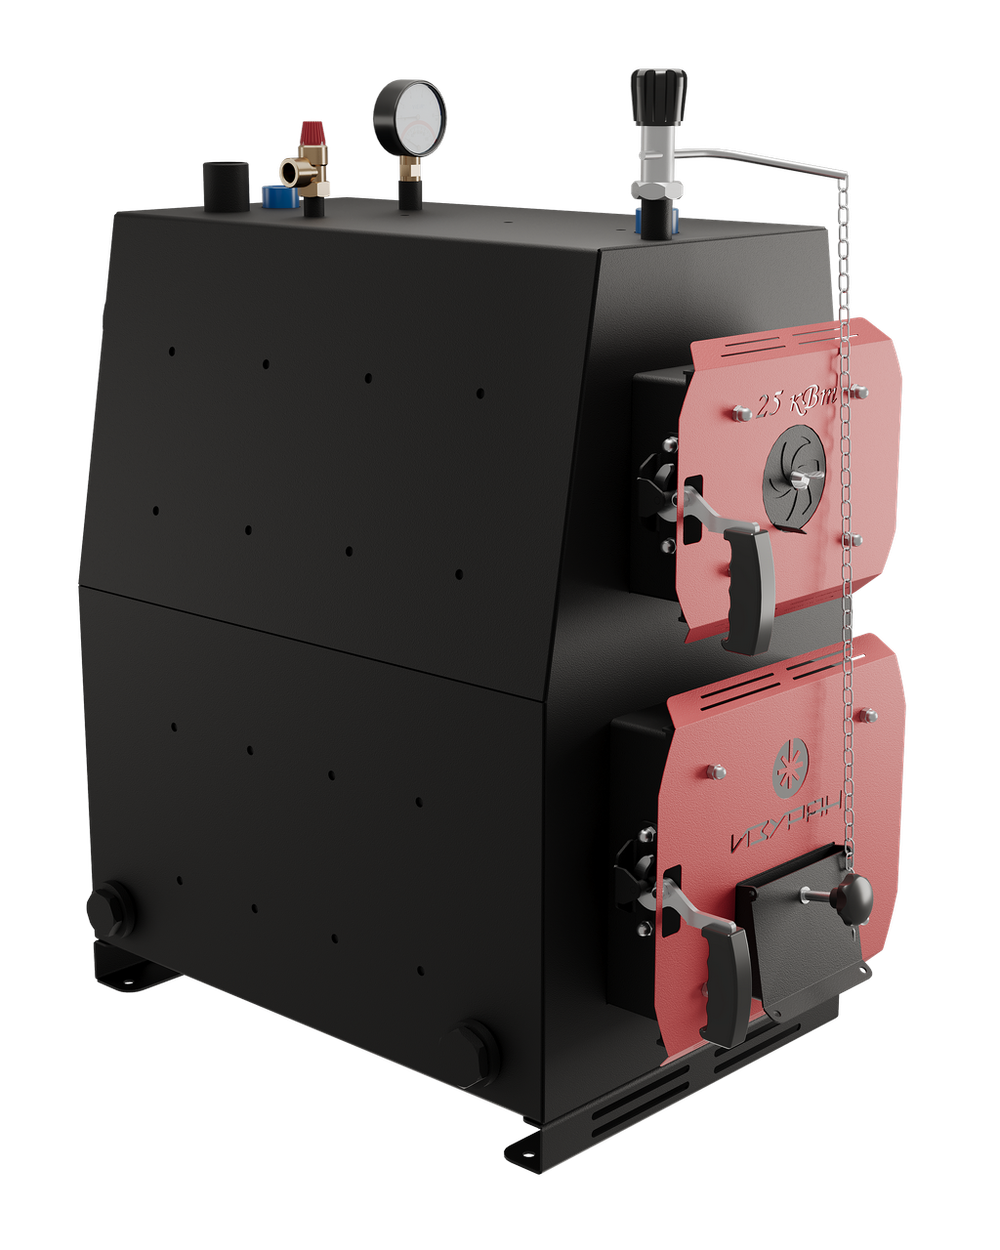 Твердотопливный котел длительного горения Изуран-100 на 100 кВт. Отапливаемое помещение до 2700 куб.м. Производитель - Изуран